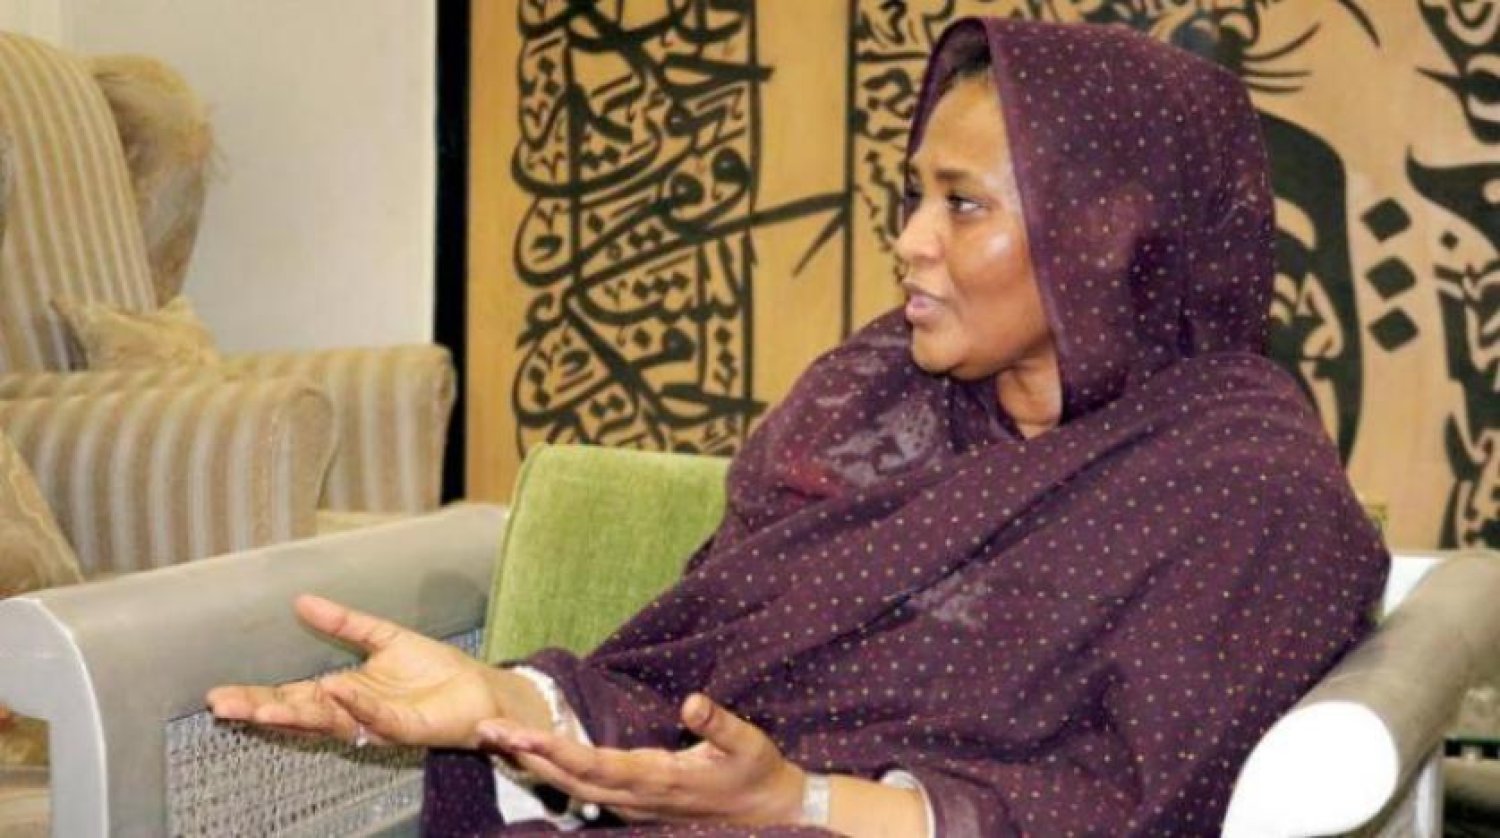 Sudan Dışişleri Bakanı Meryem Sadık el-Mehdi’nin Şarku’l Avsat’a röportaj verirken çekilen bir fotoğrafı